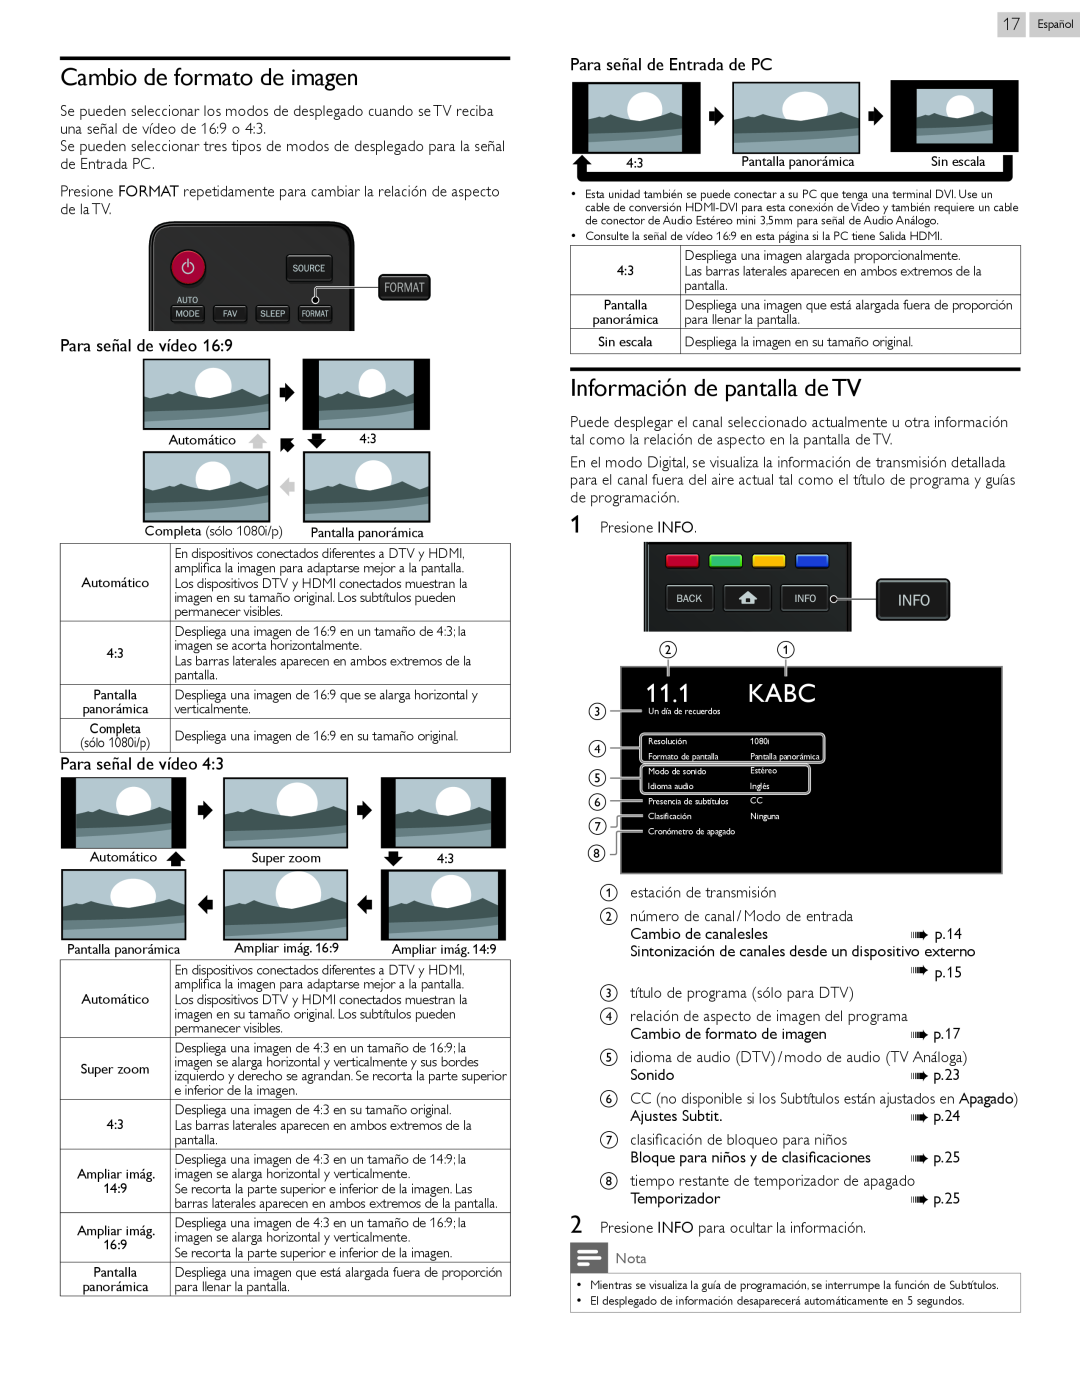 Magnavox 22MV402X, 26MV402X Kabc, Cambio de formato de imagen, Información de pantalla de TV, Para señal de Entrada de PC 